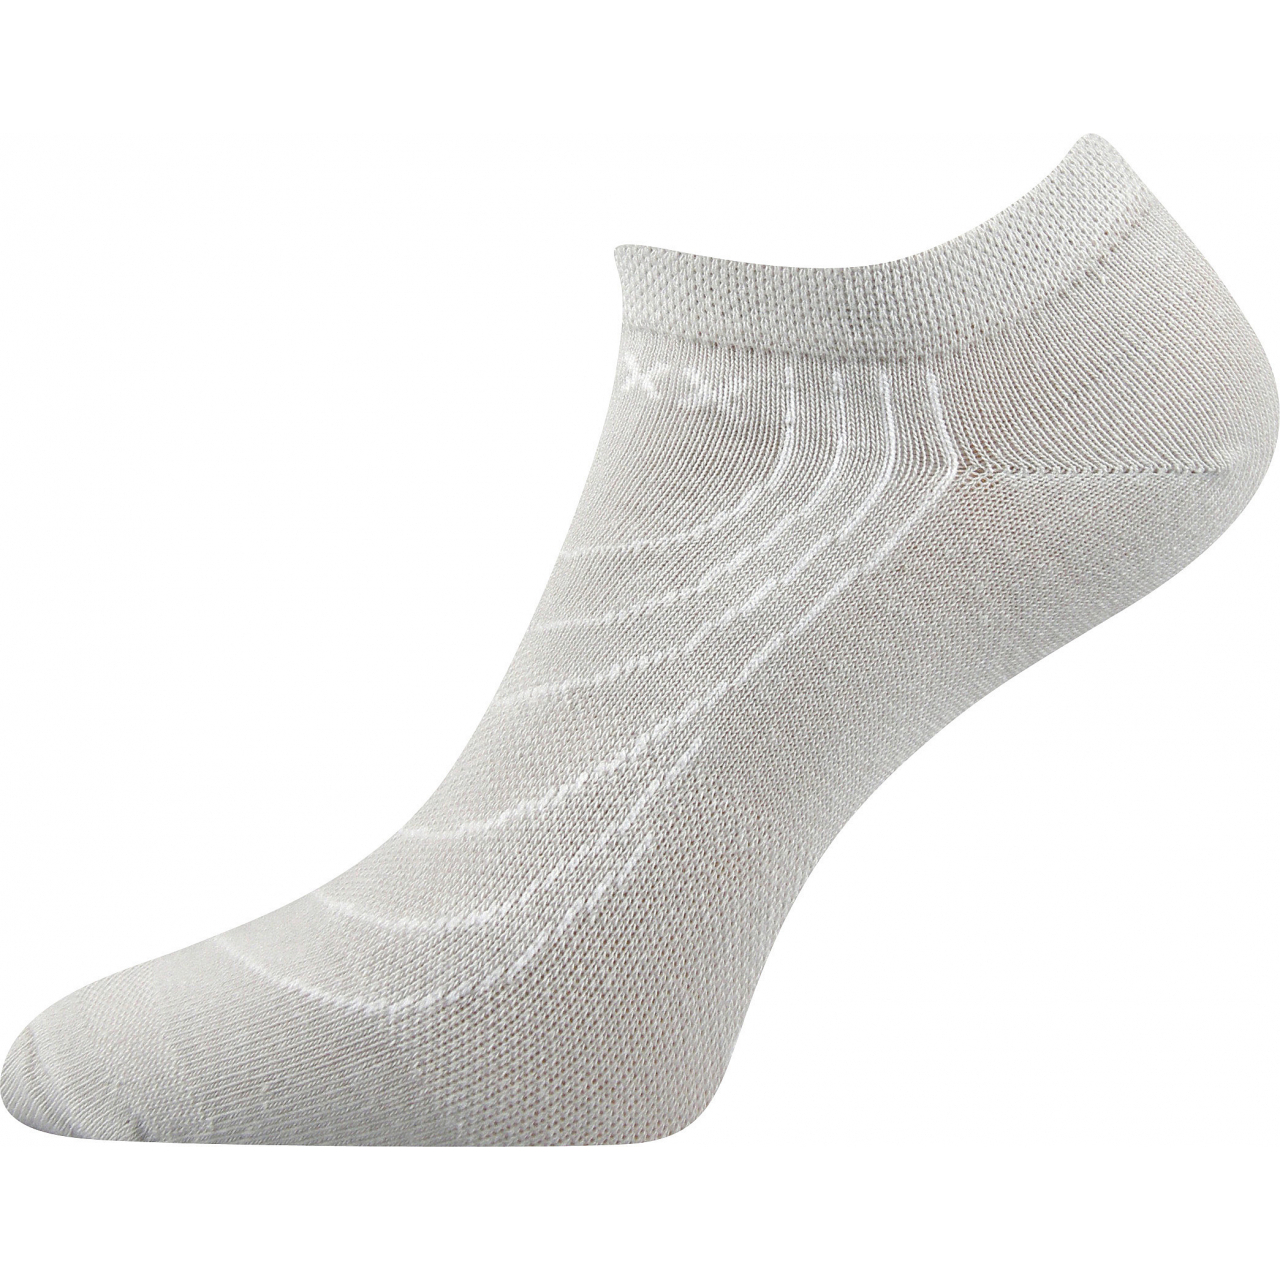 Ponožky nízké Voxx Rex - světle šedé, 35-38